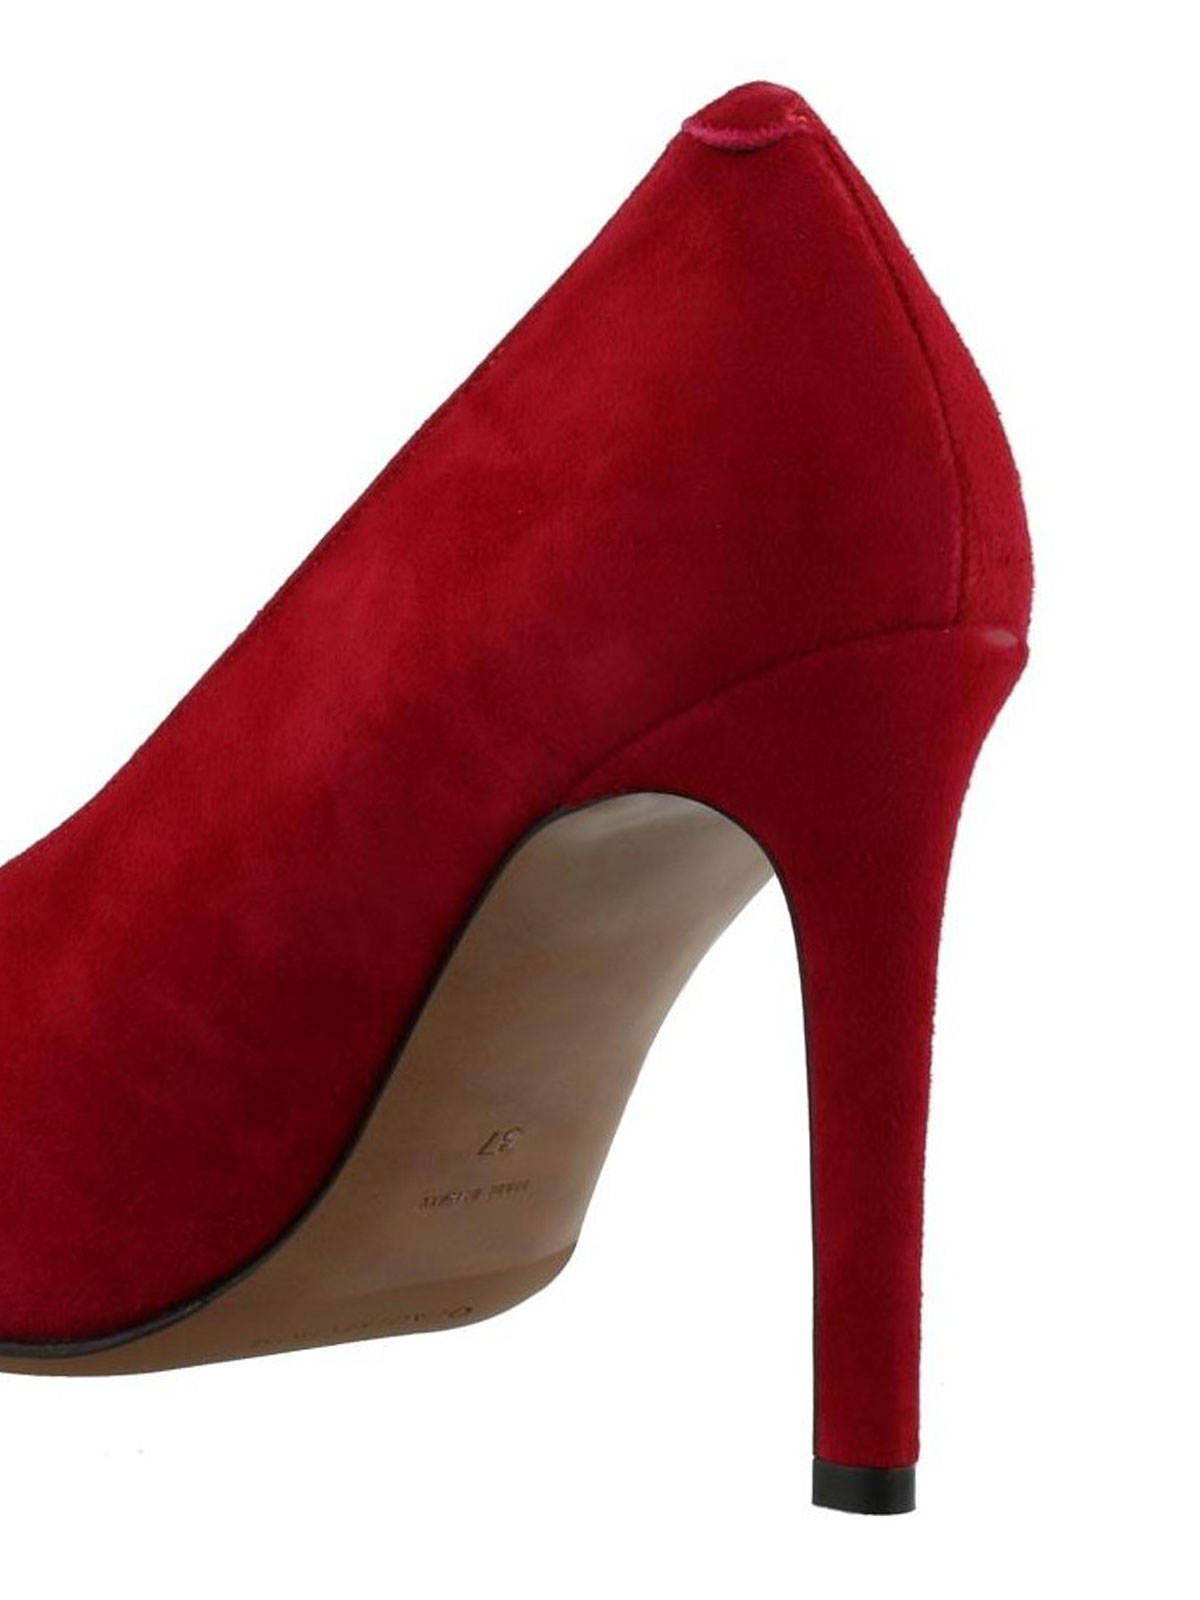 Court shoes L' - Red suede pumps 0SH15110WP05404015